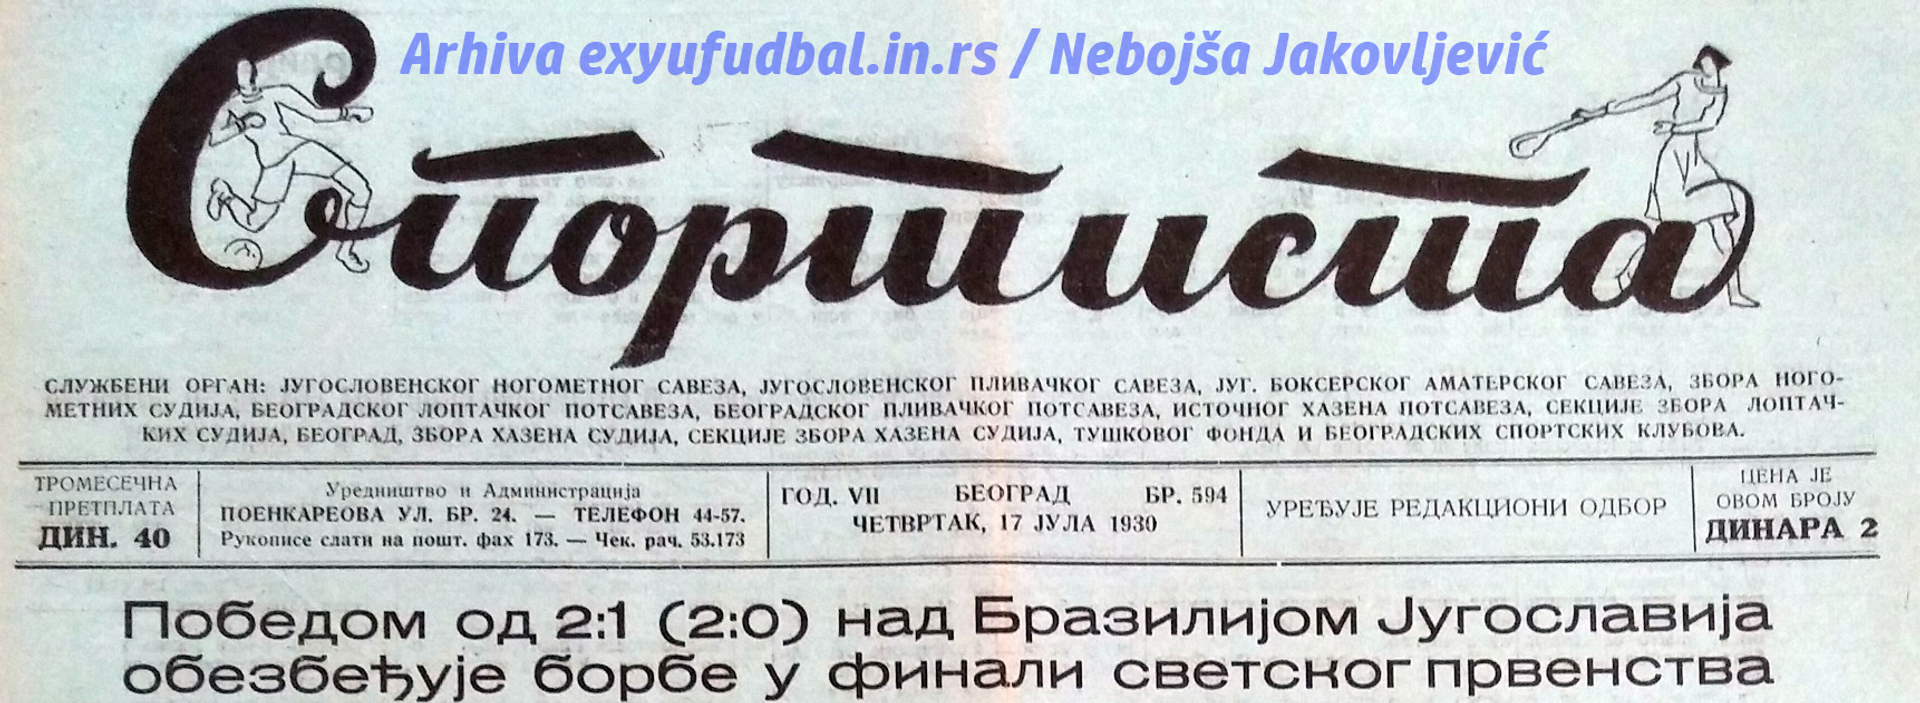 Jugoslavija i Brazil, Urugvaj 1930 - Sputnik Srbija, 1920, 24.11.2022